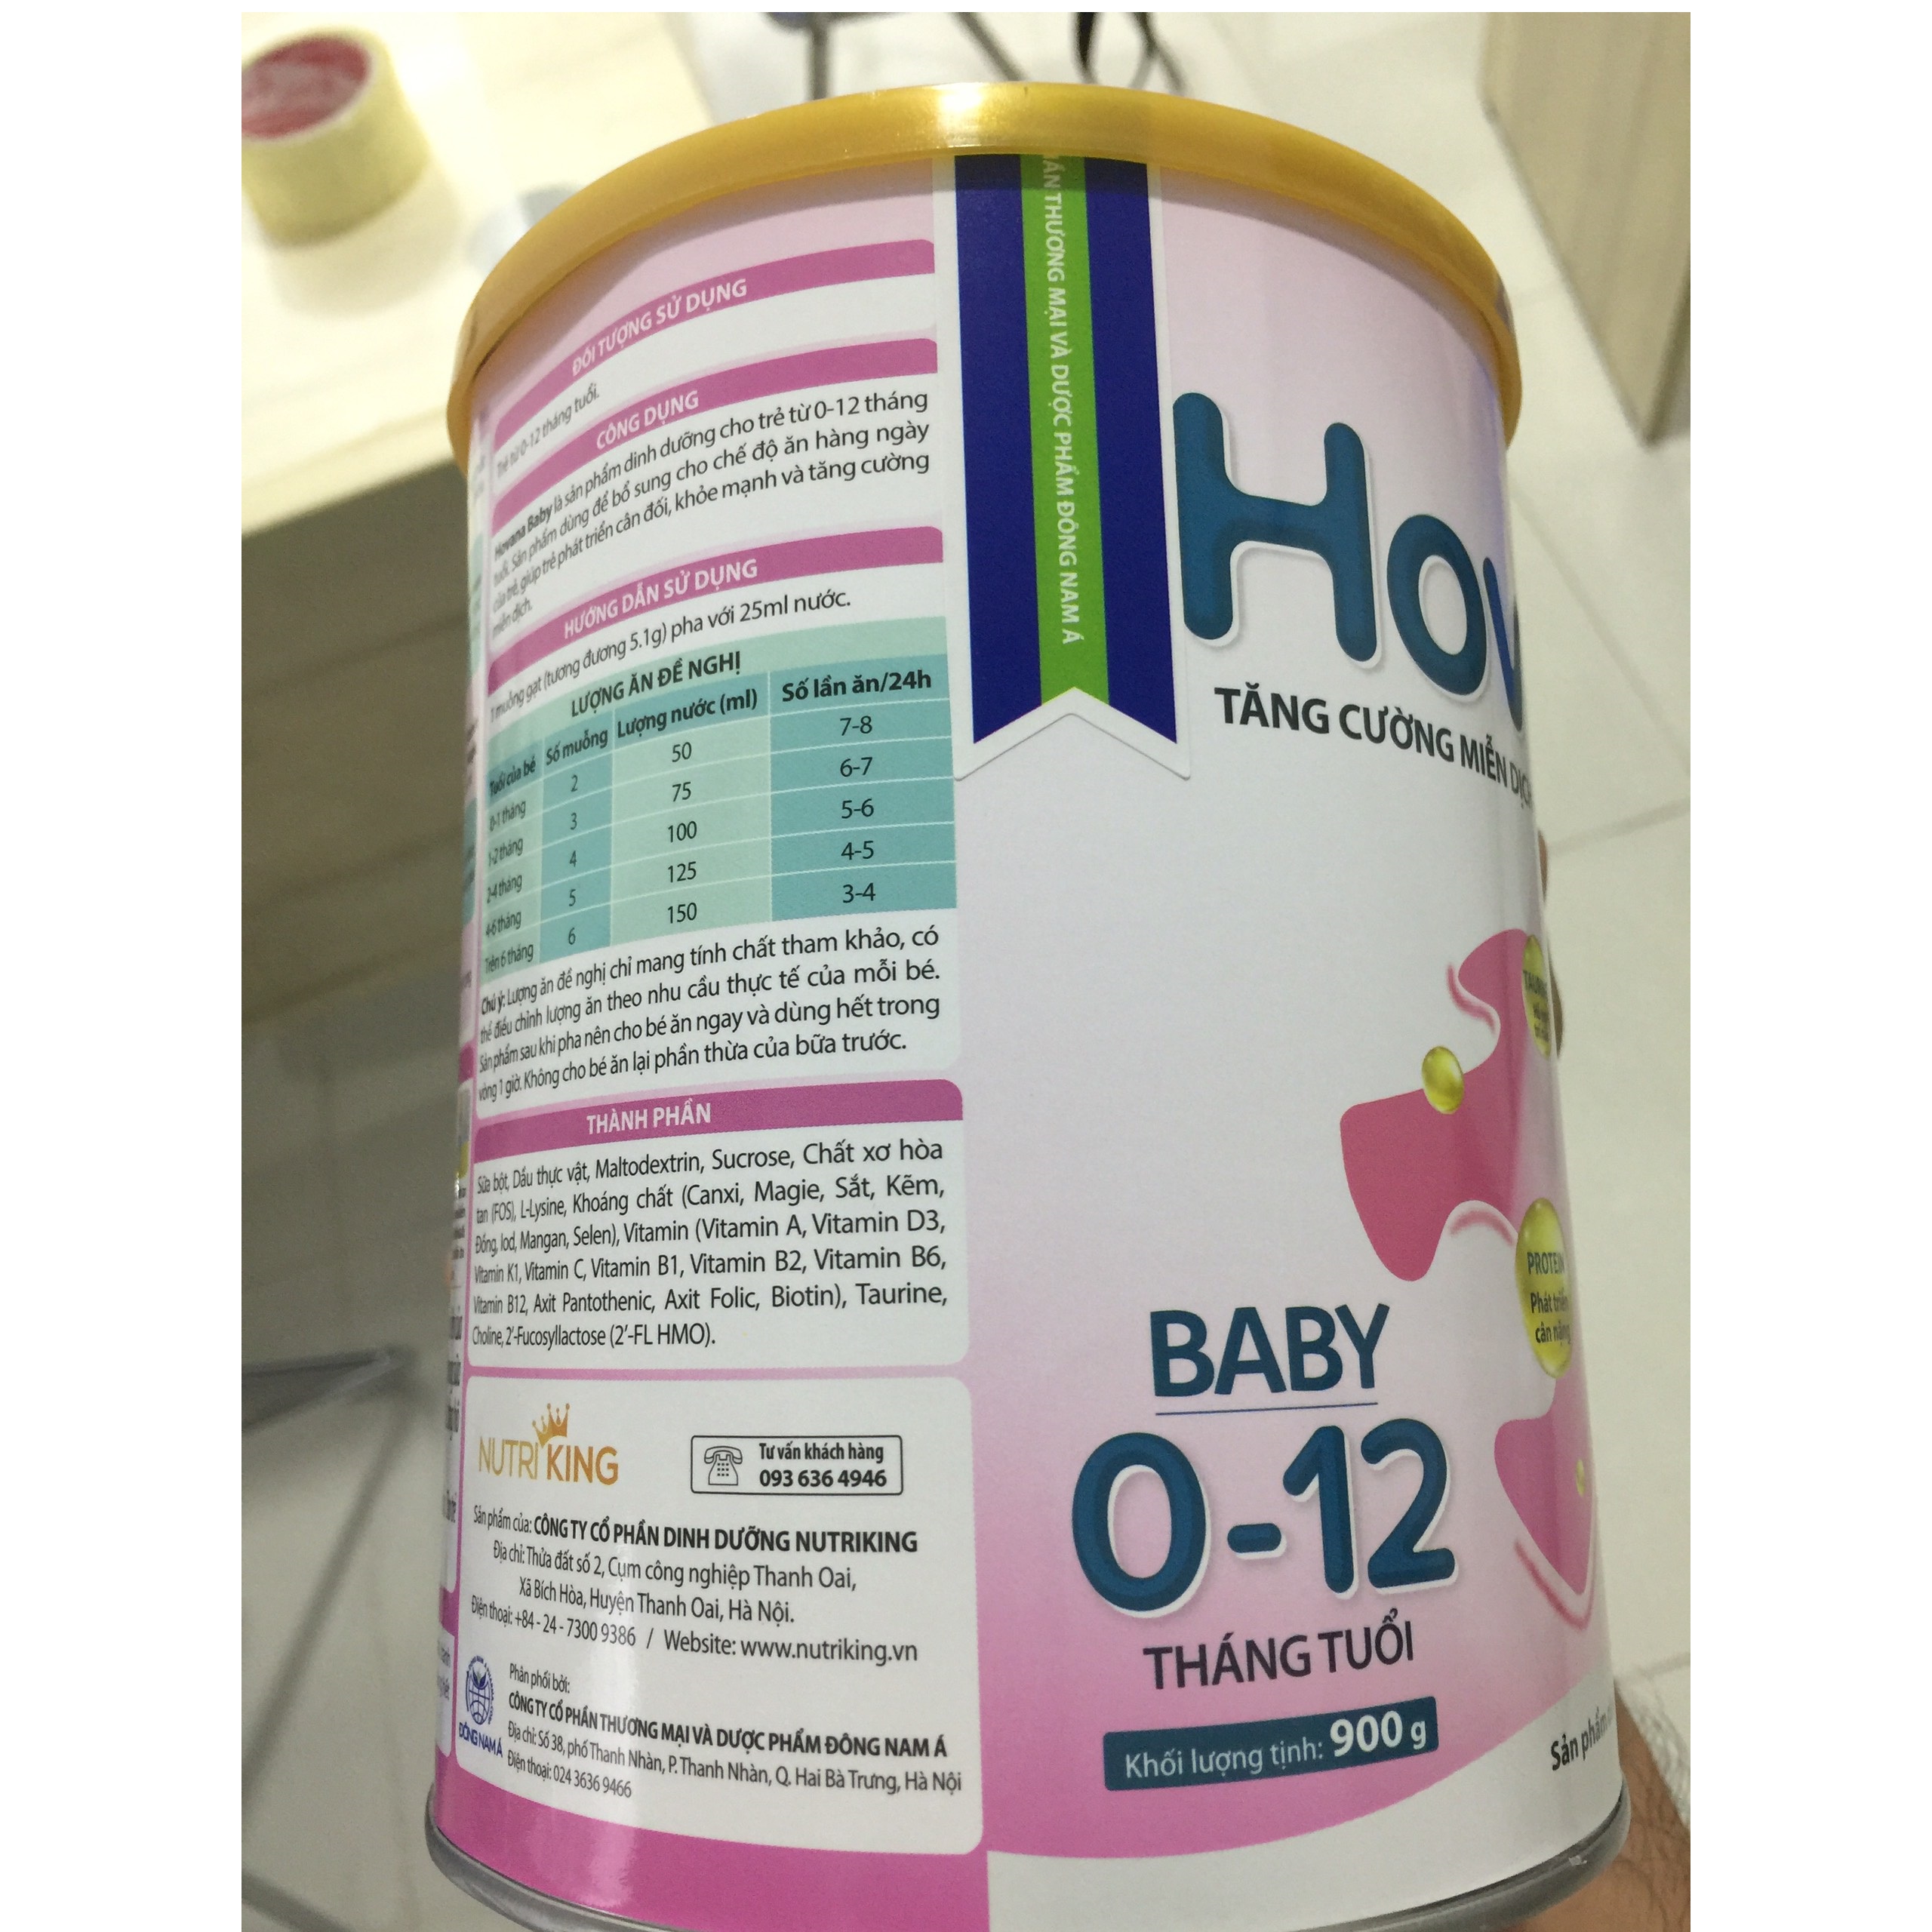 Bộ 2 Lon Sữa bột Hovana Baby hỗ trợ tiêu hóa cho bé từ 0 đến 12 tháng 400gr